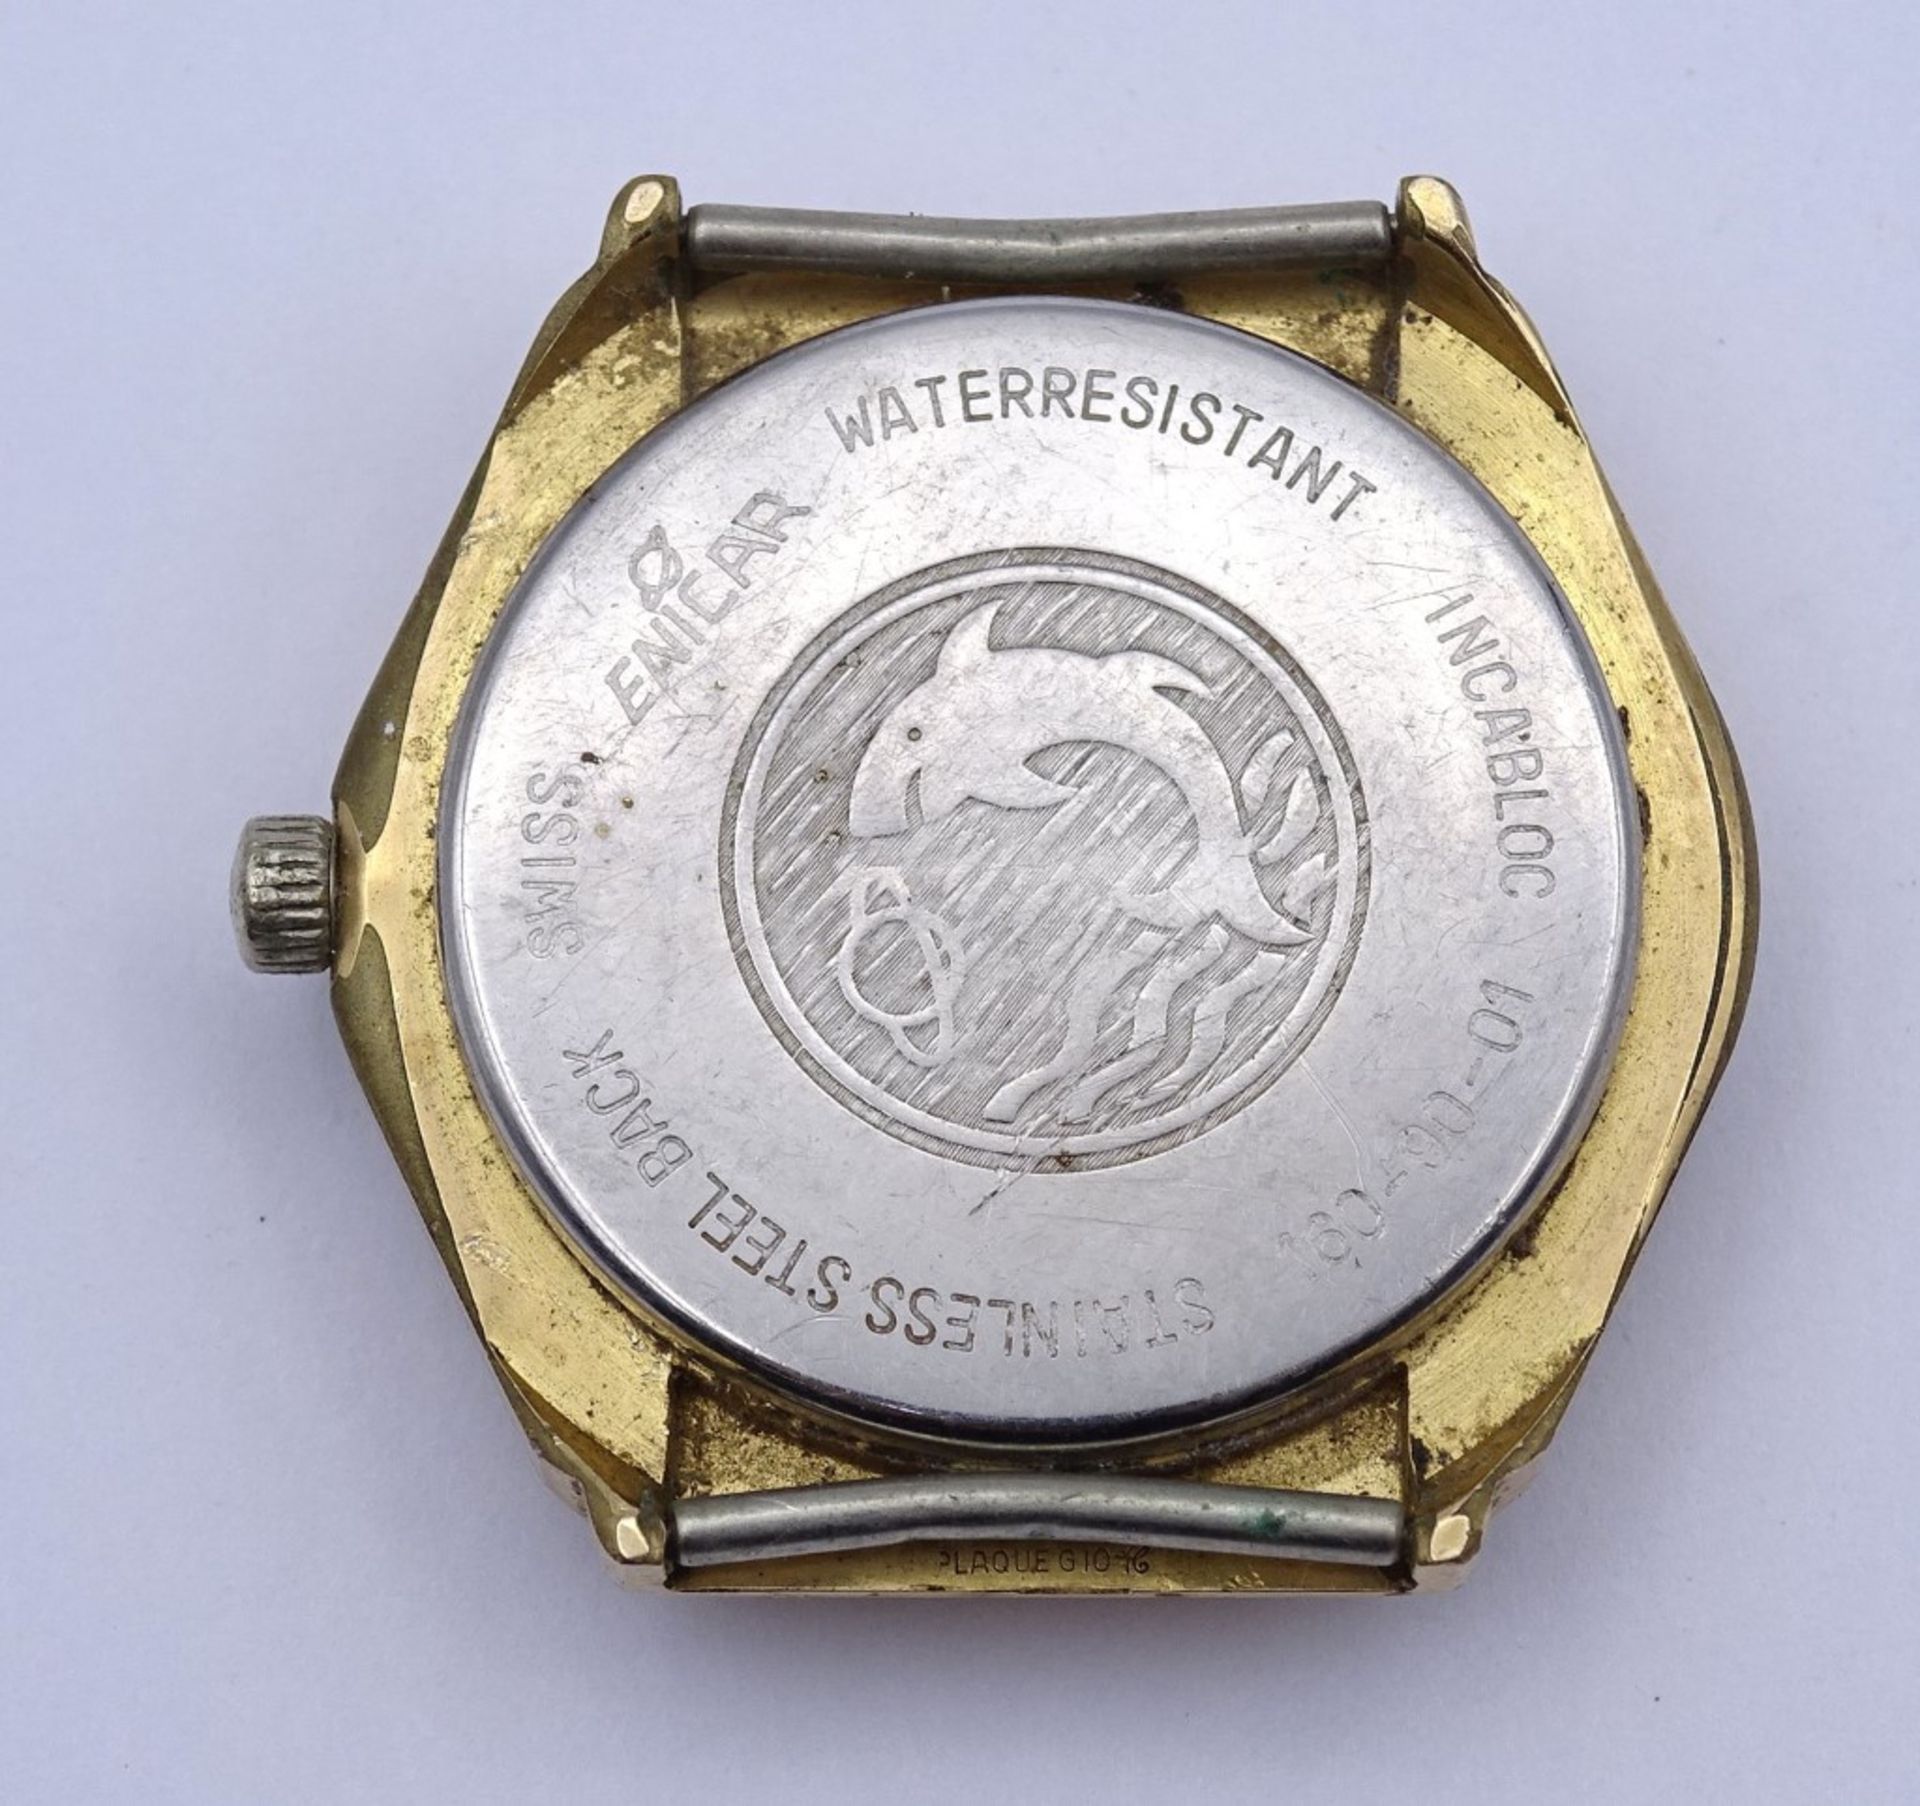 Herren Armbanduhr Enicar MRO Star, 2367, Cal. 161, Werk läuft nur min.an, Glas beschädigt, 35x35mm, - Bild 4 aus 4